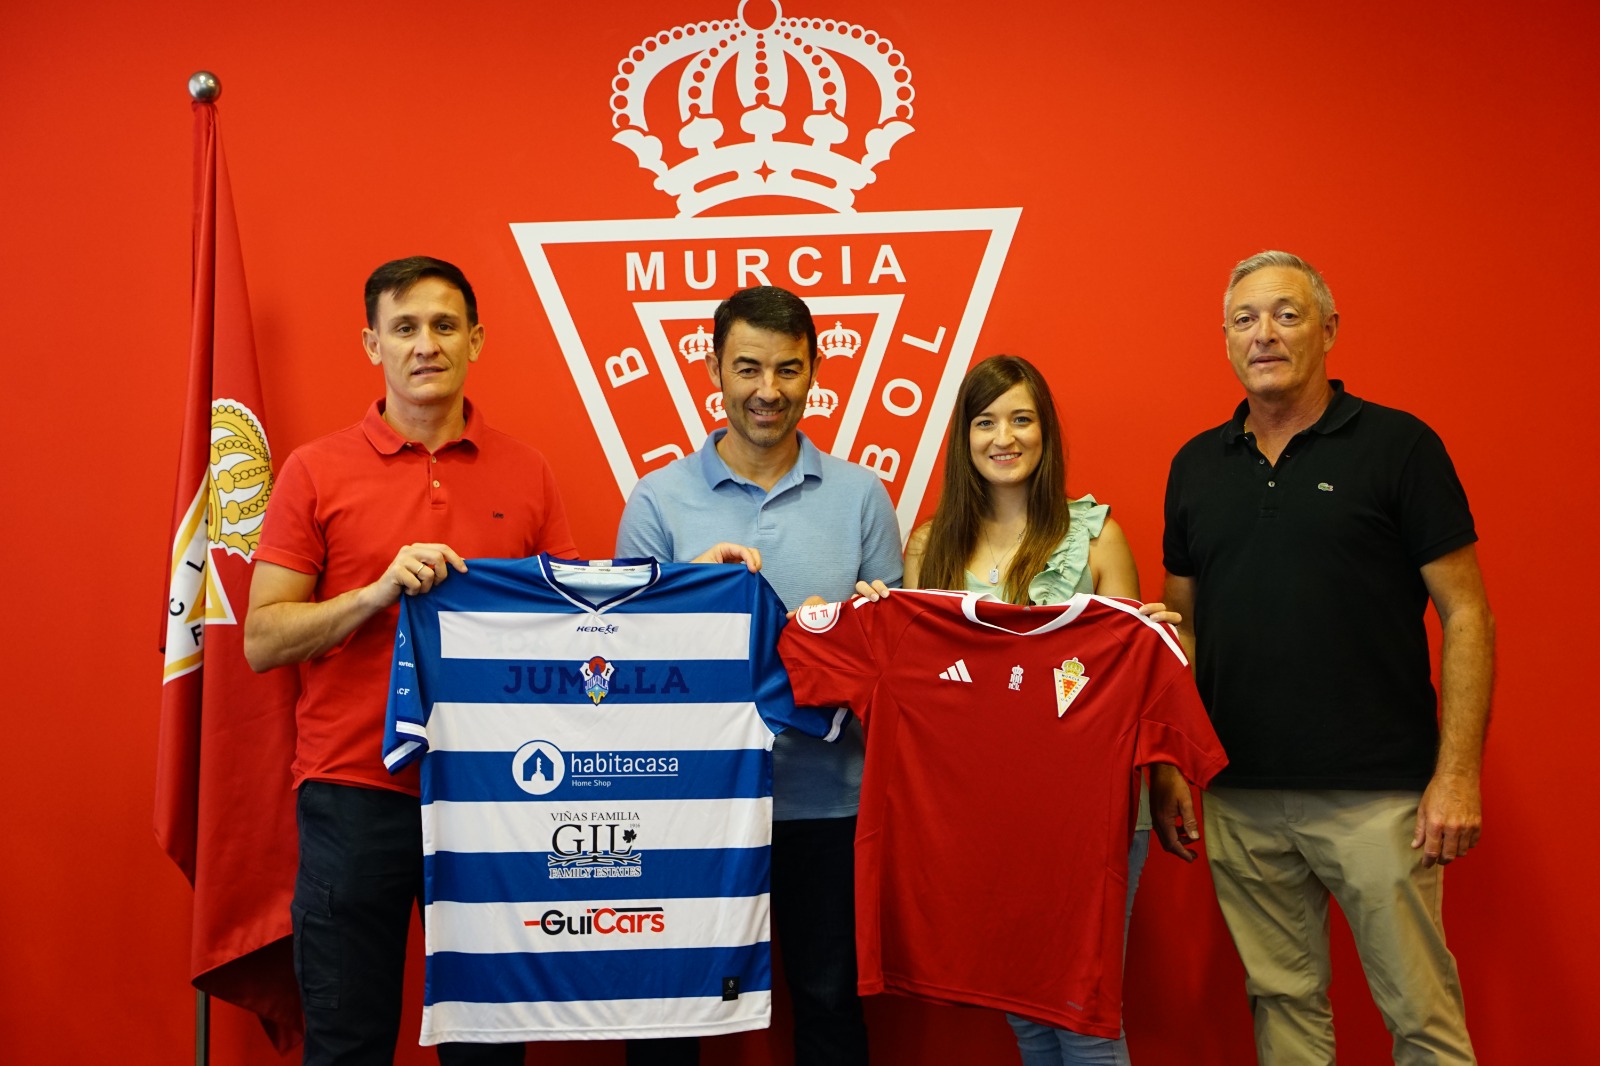 El 𝗝𝘂𝗺𝗶𝗹𝗹𝗮 𝗔𝘁𝗹𝗲́𝘁𝗶𝗰𝗼 𝗖𝗙, nuevo club convenido con el Real Murcia CF.